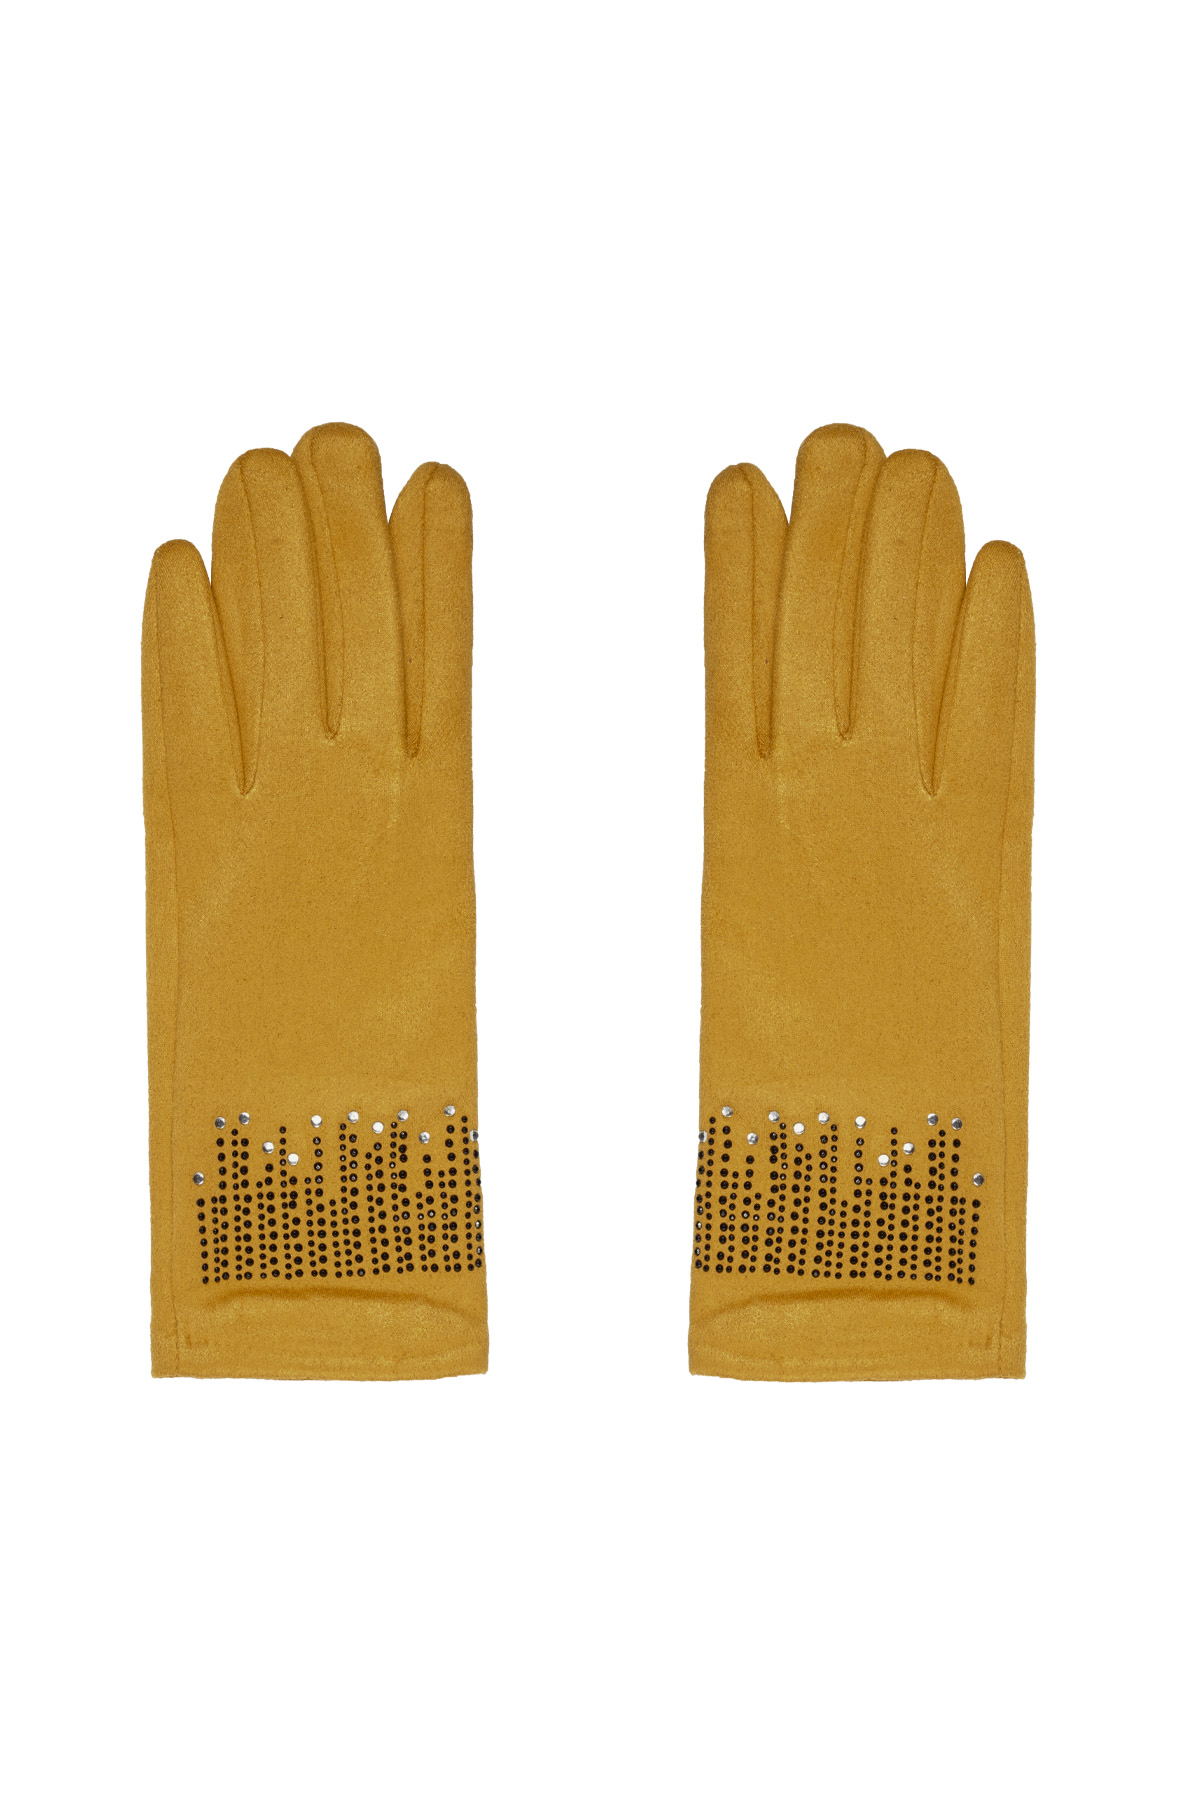 Handschuhe Steine - gelb h5 